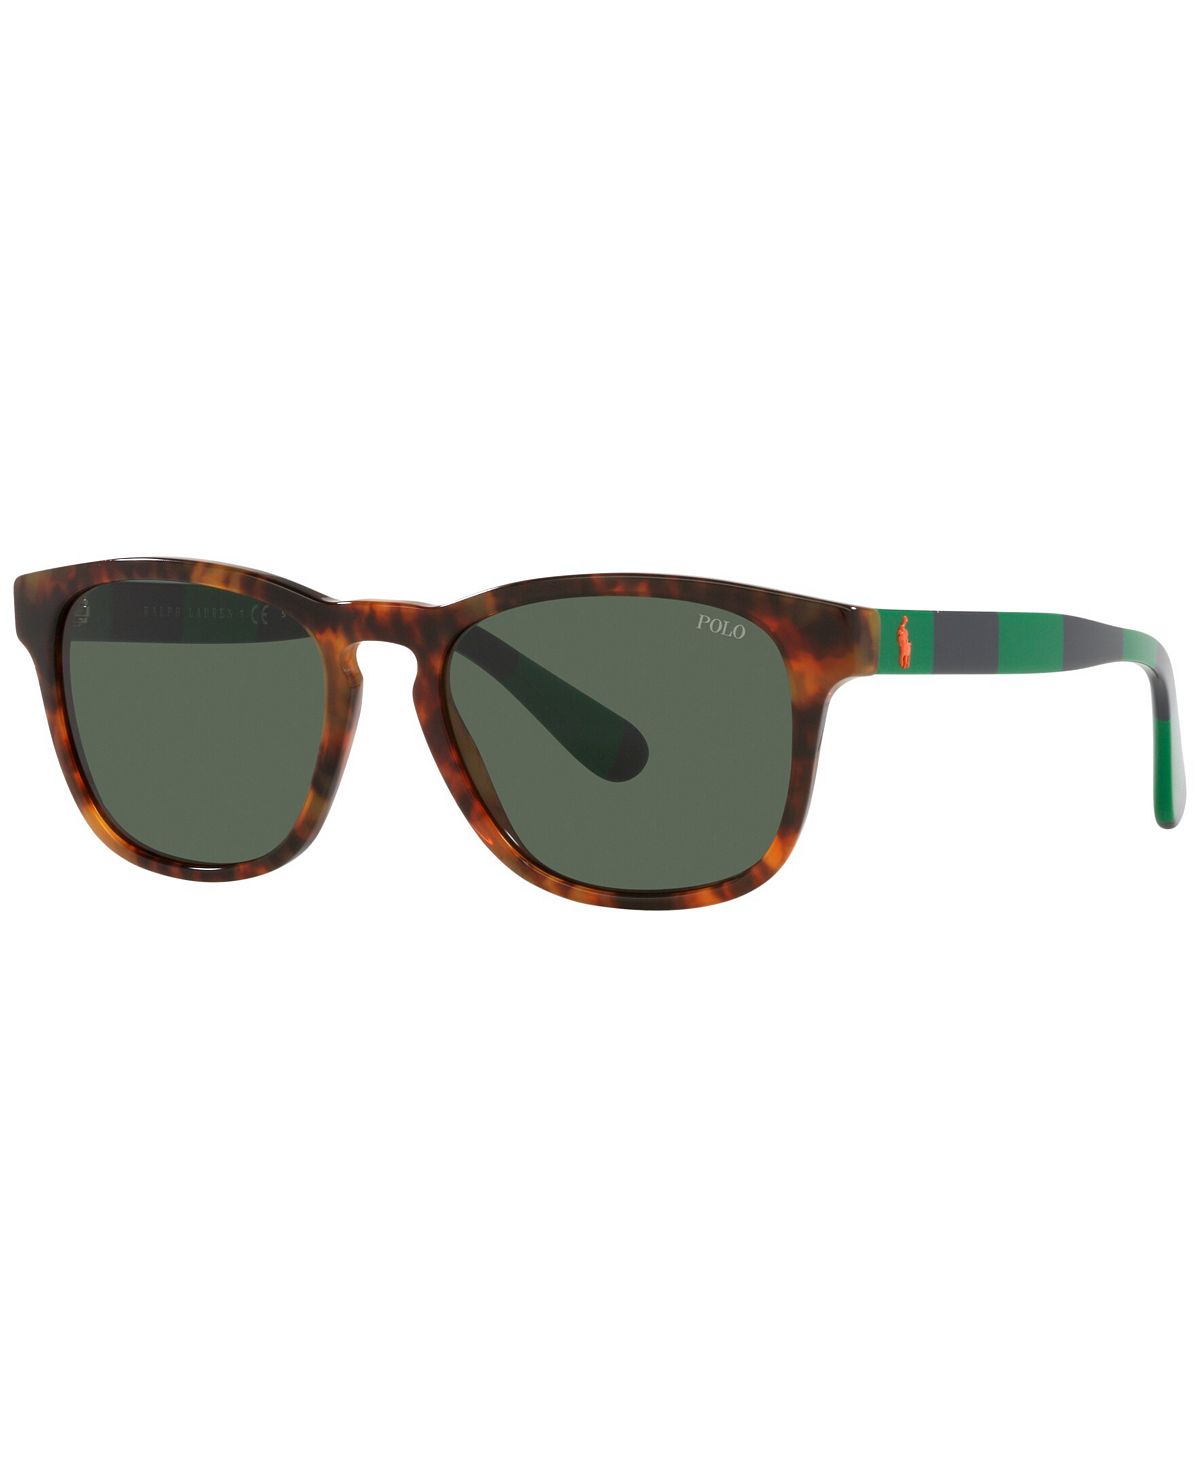 Мужские солнцезащитные очки, PH4170 53 Polo Ralph Lauren